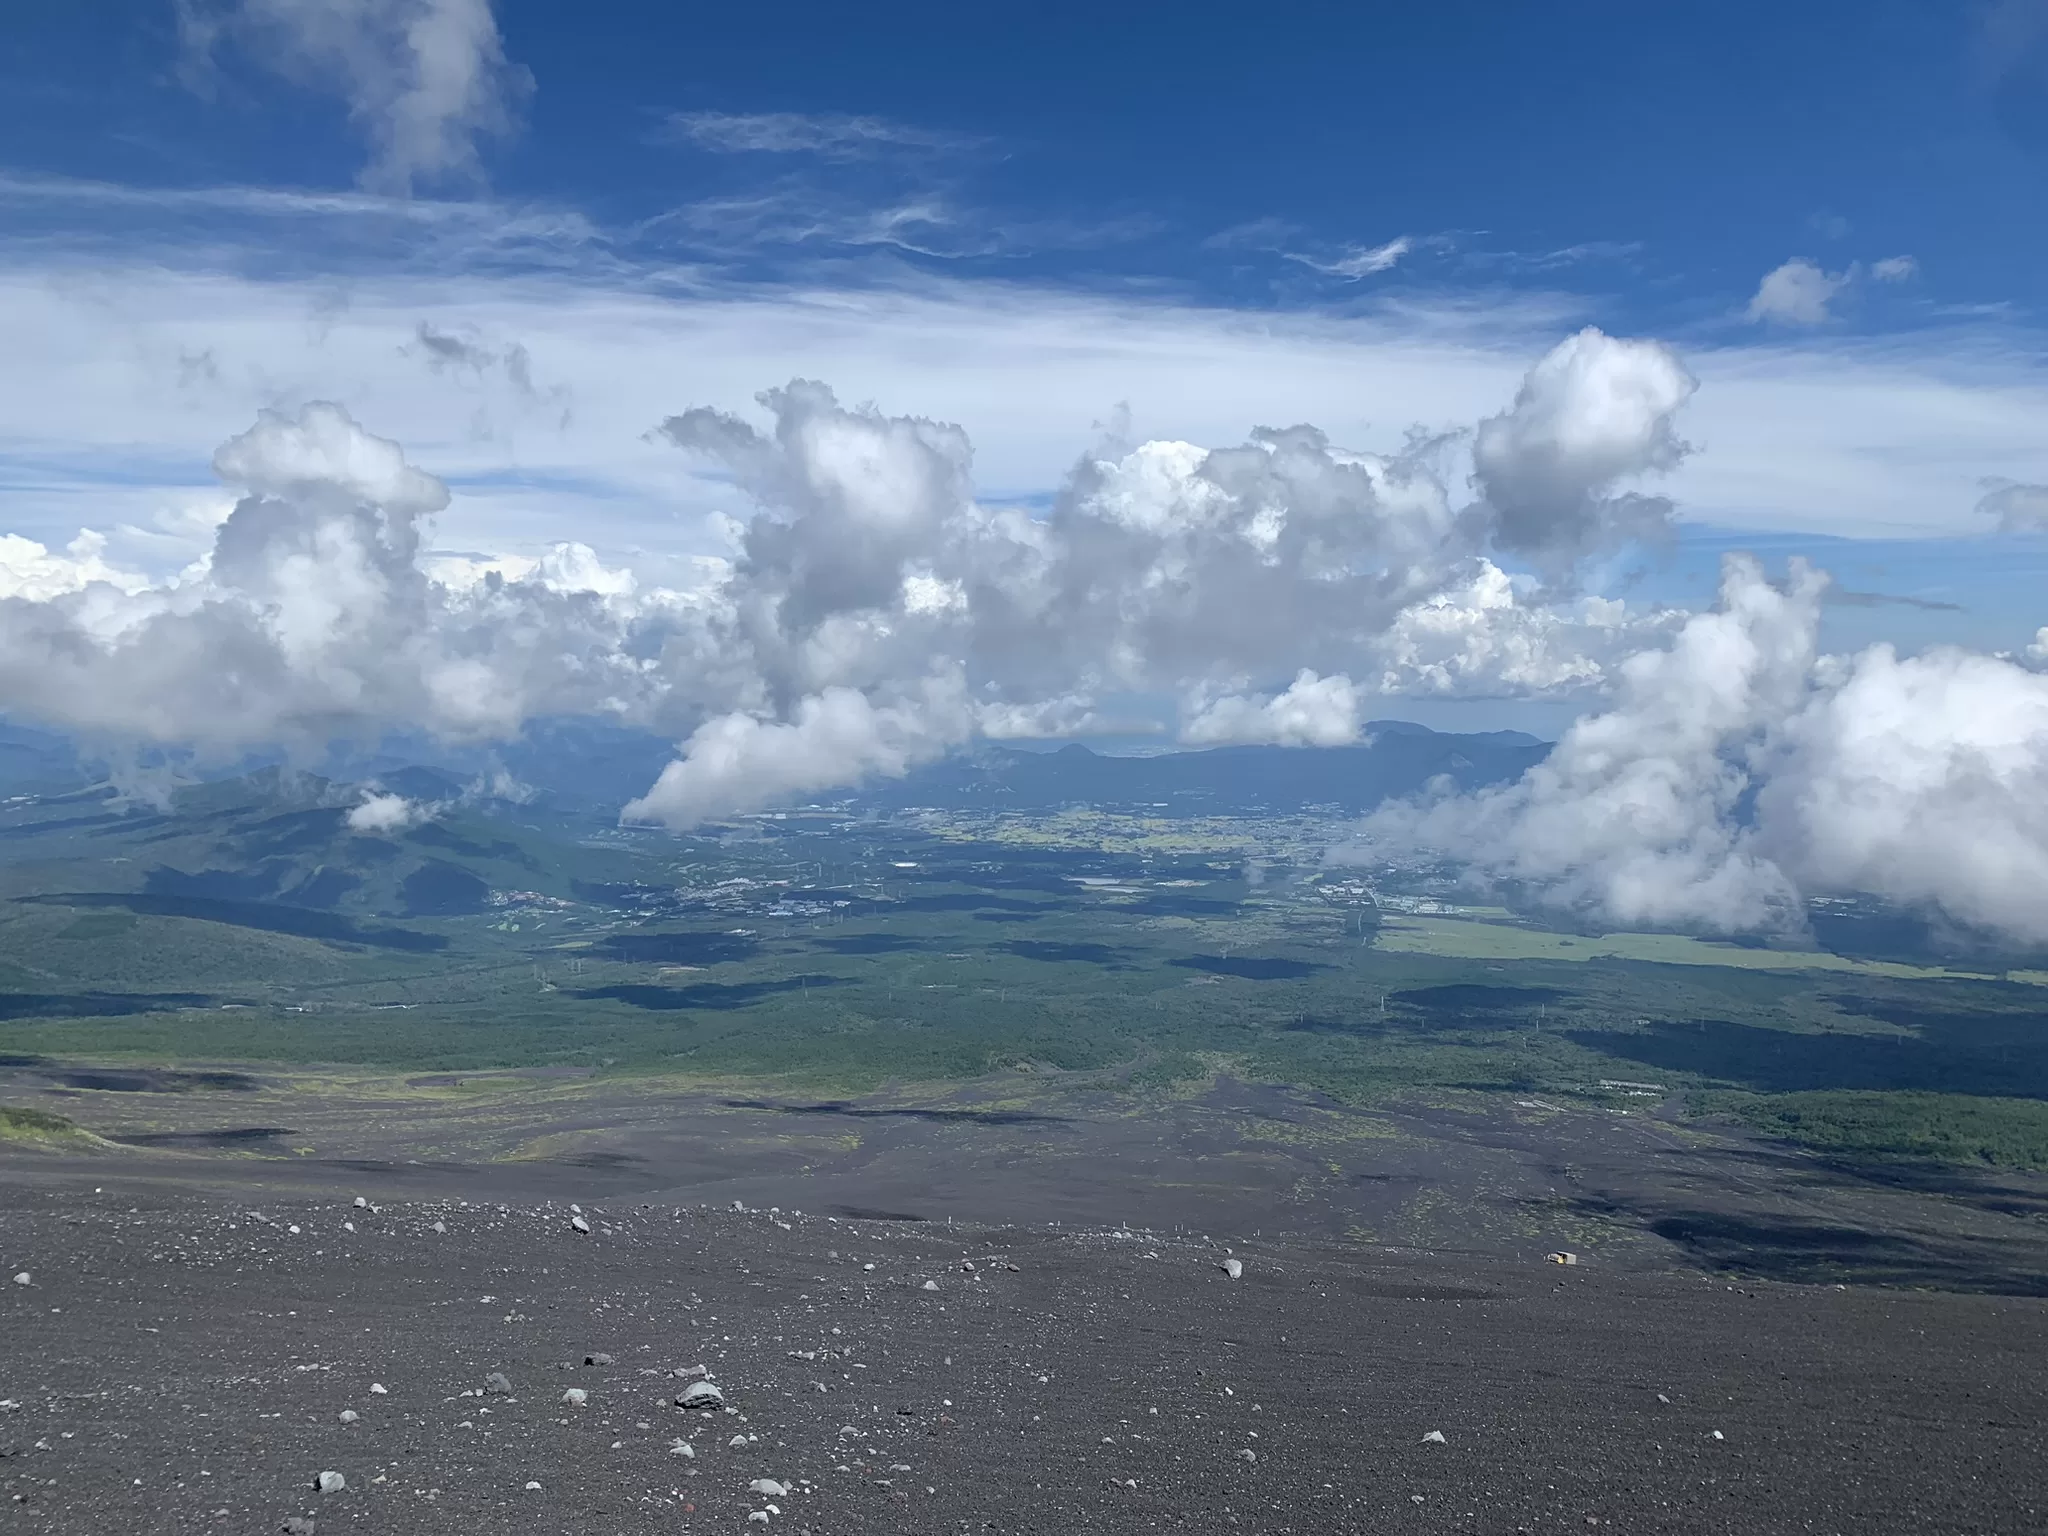 Jak jsem zdolal horu Fuji v Japonsku (trasou Gotemba trail) - Cestování po Japonsku - Petr Sycha